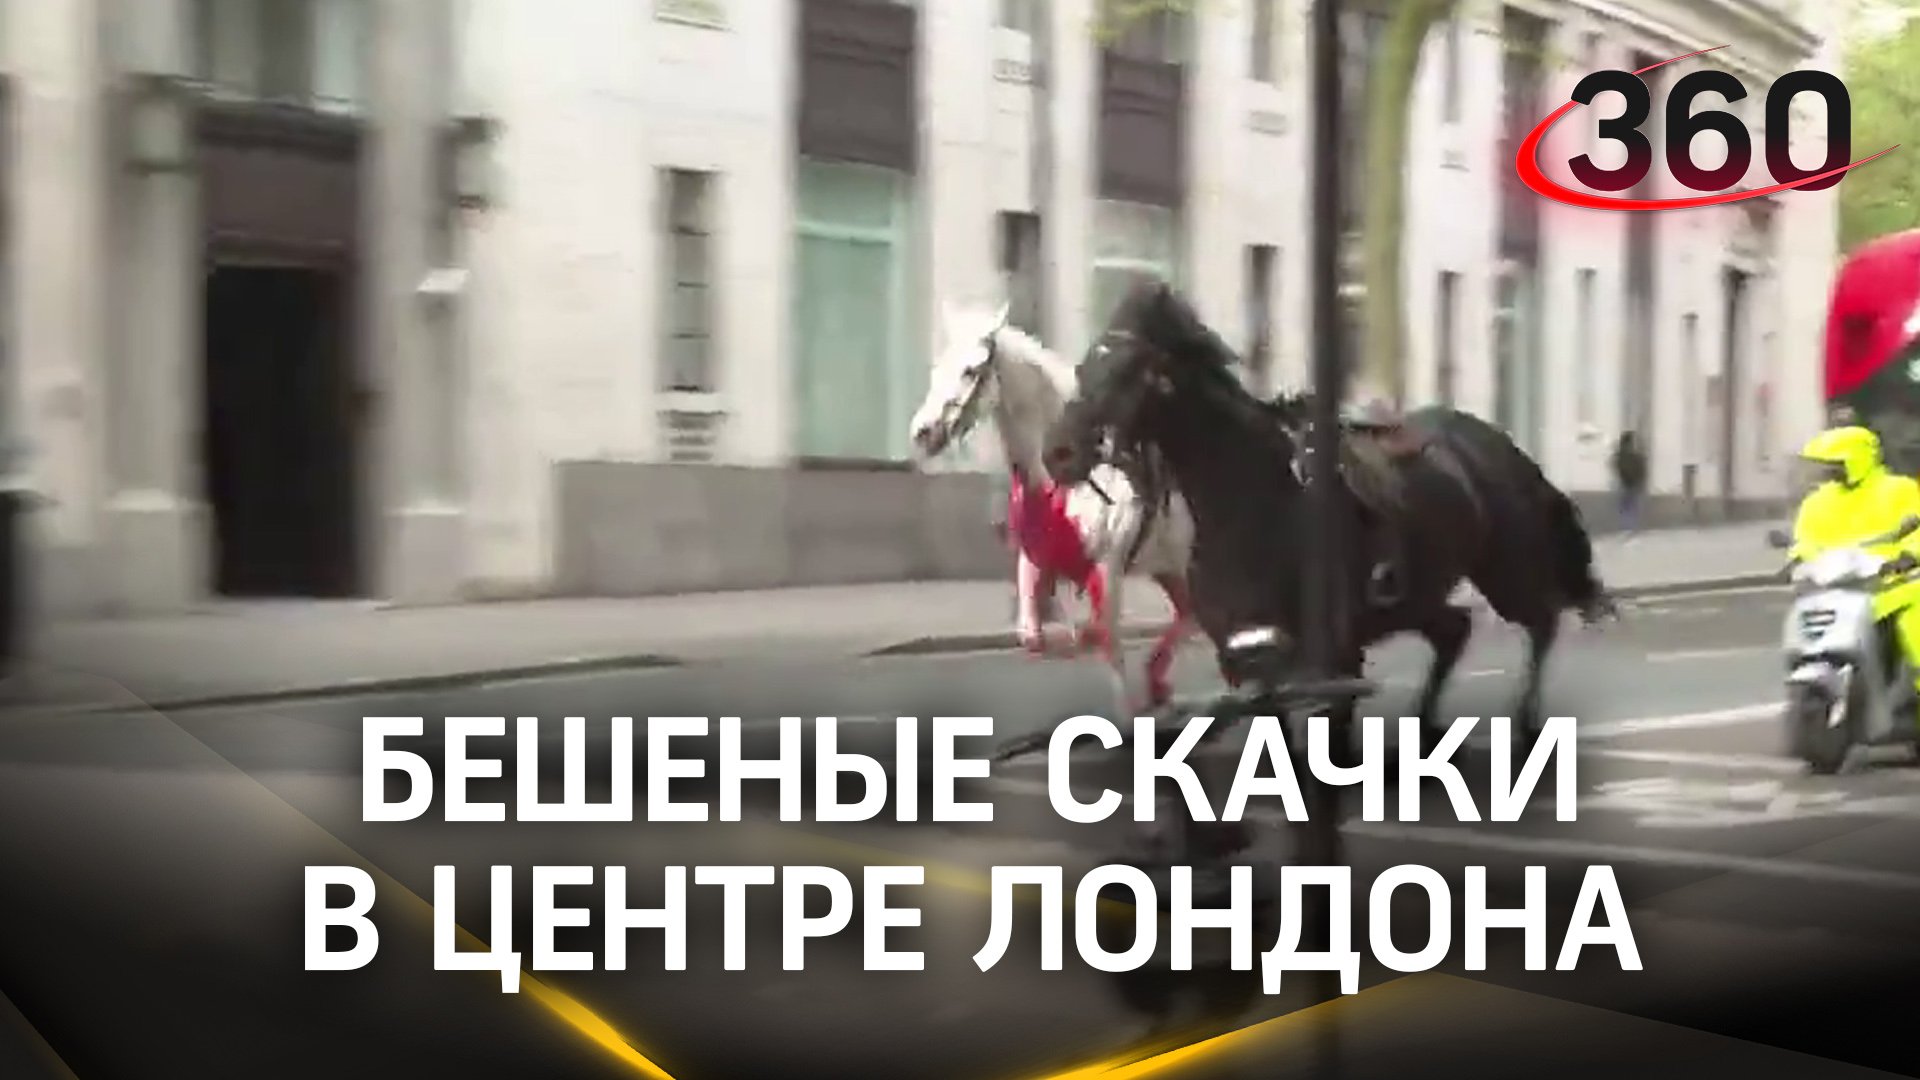 Бешеные скачки: кони таранили людей, автобусы и здания в Лондоне